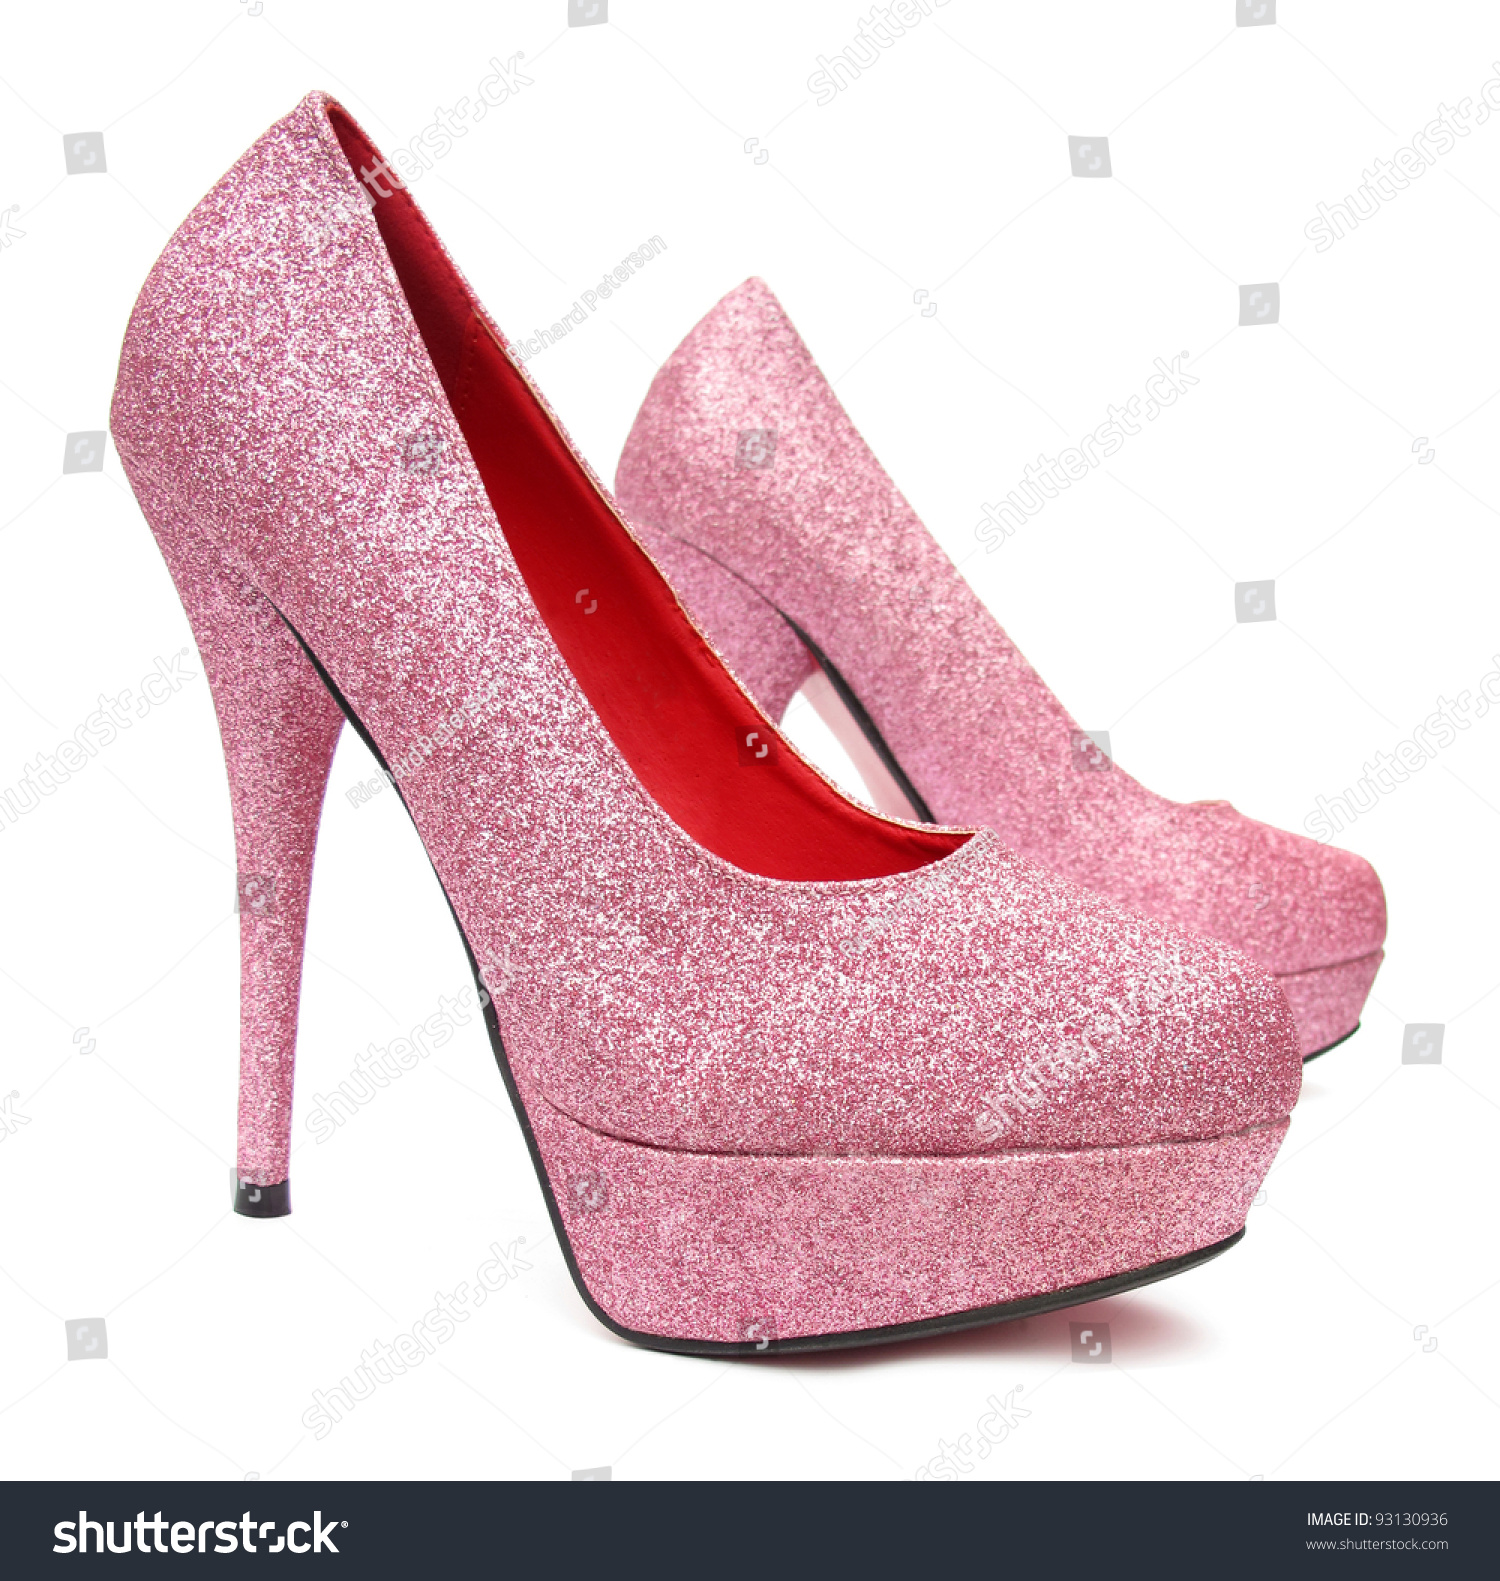 Pink High Heels Pump Shoes Stock Photo 93130936 : Shutterstock